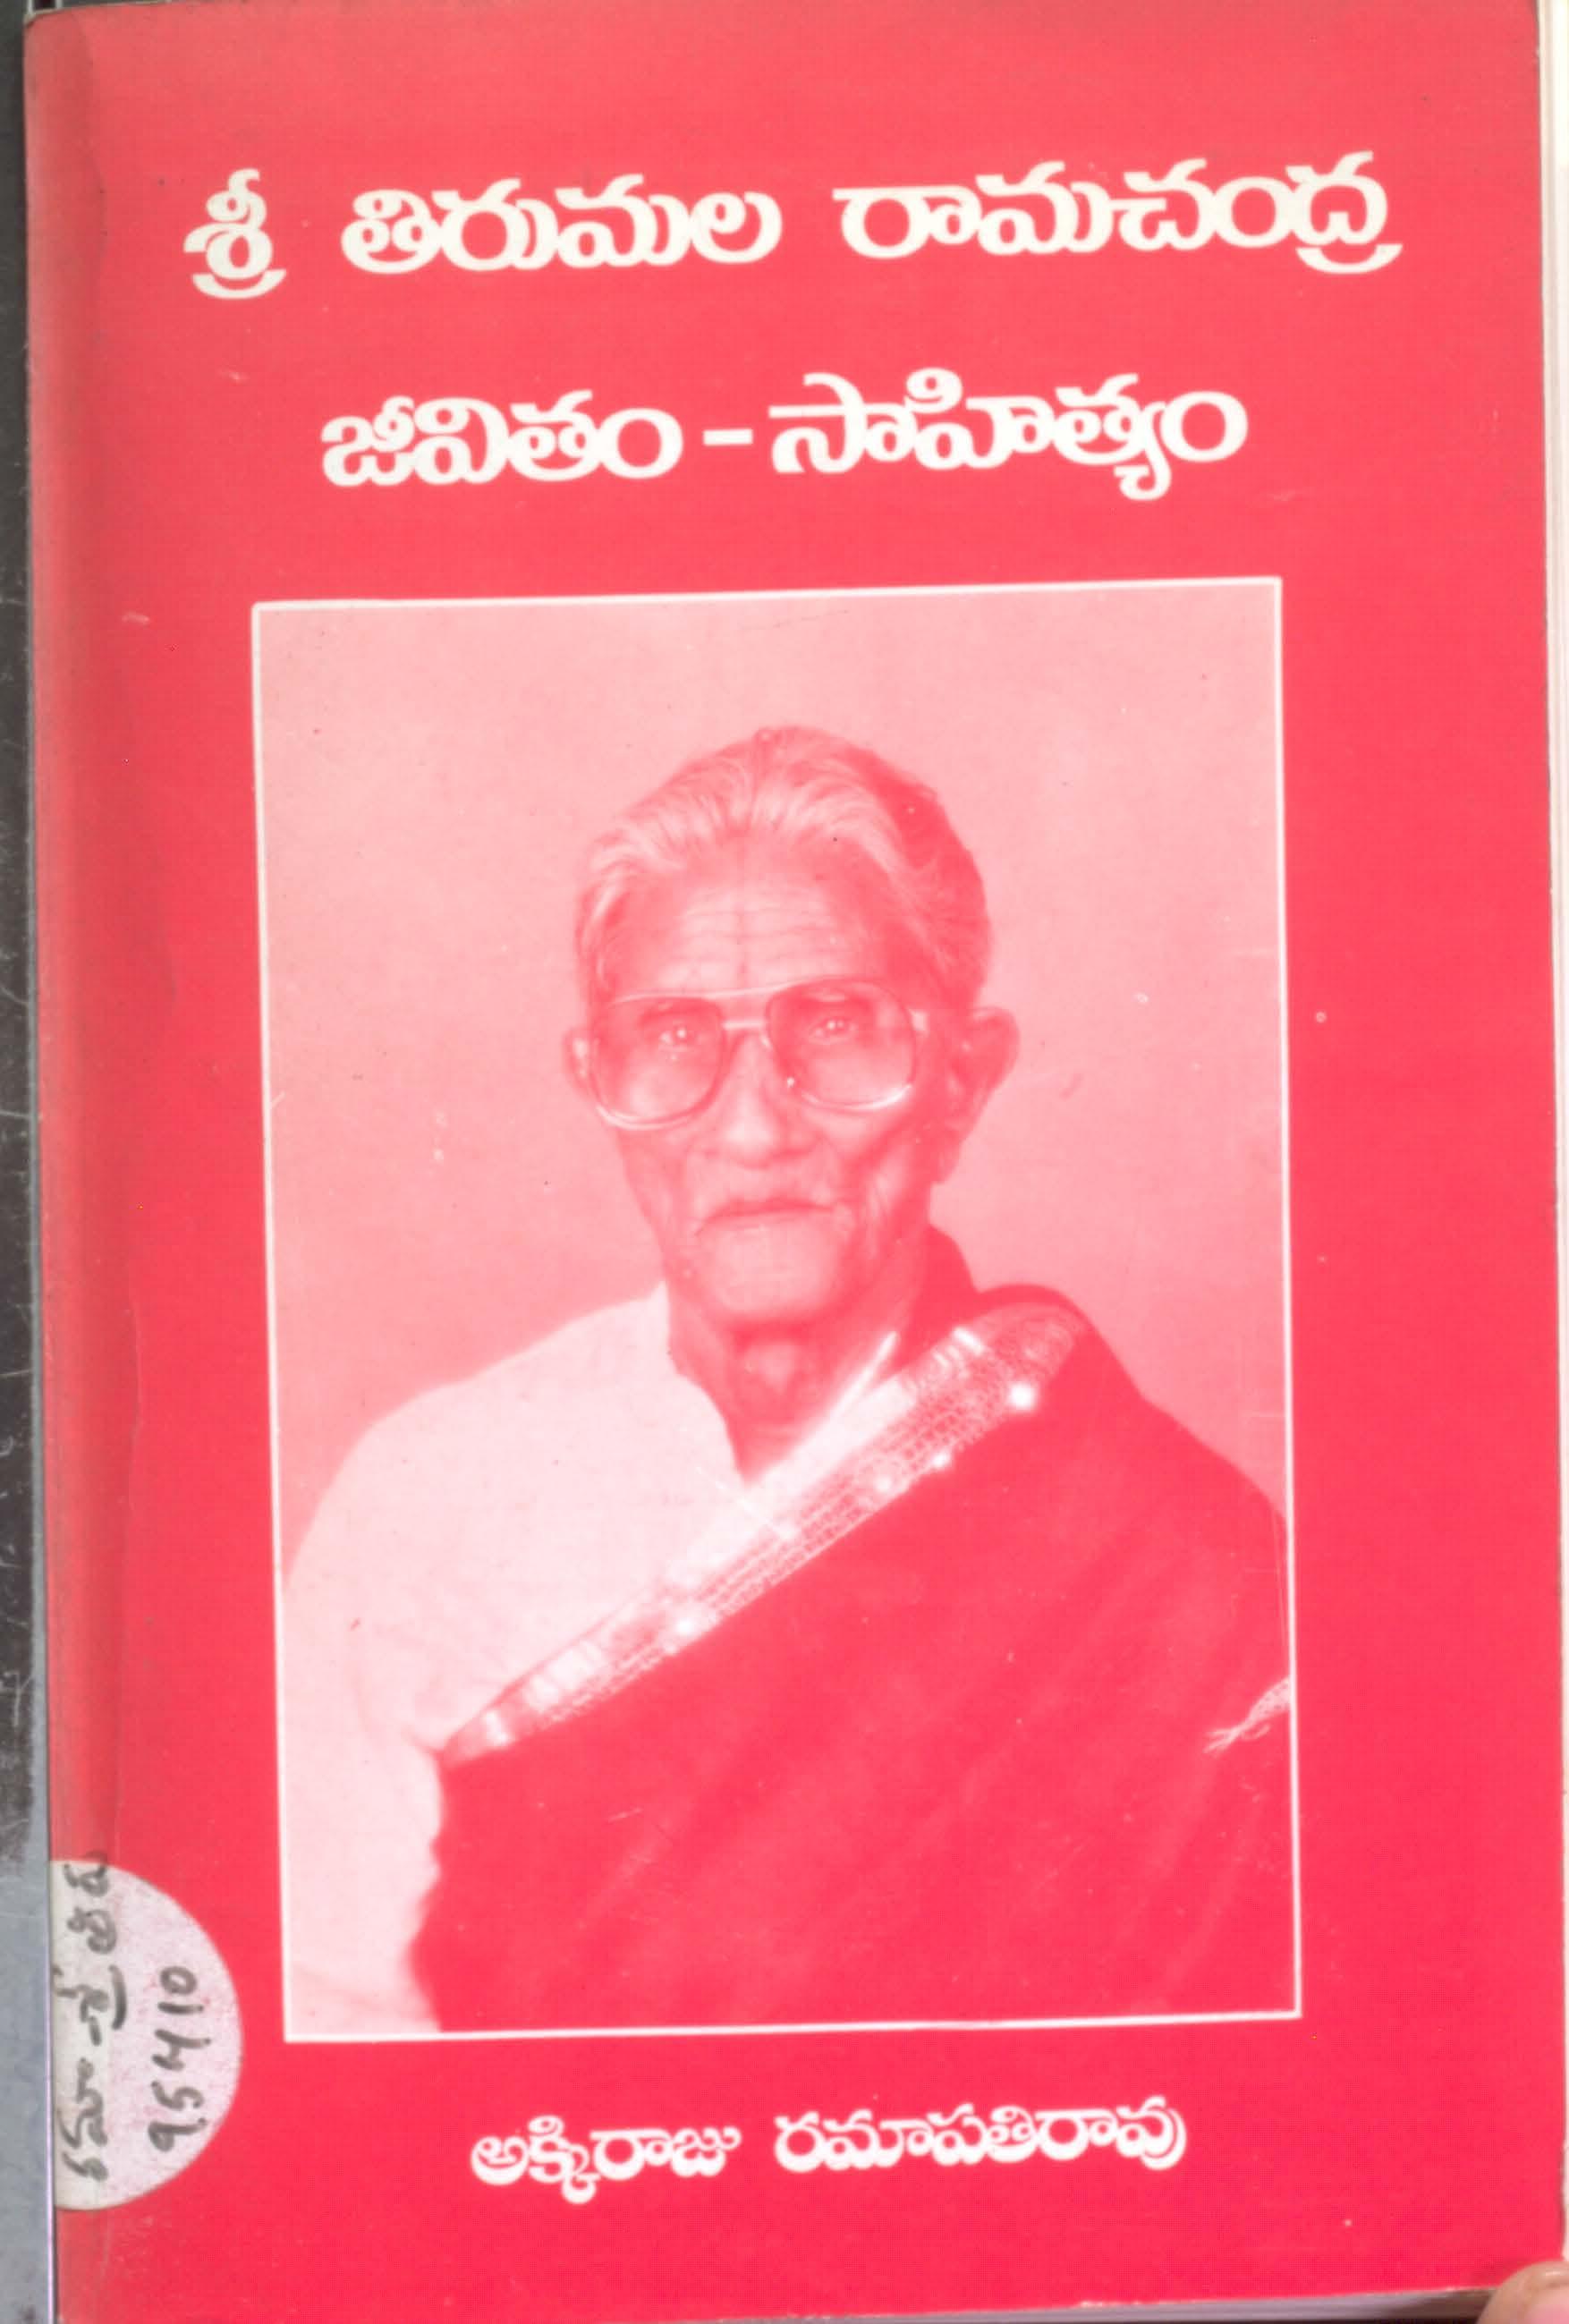 Sri Thirumala Ramachandra Jivitham -Sahithyam